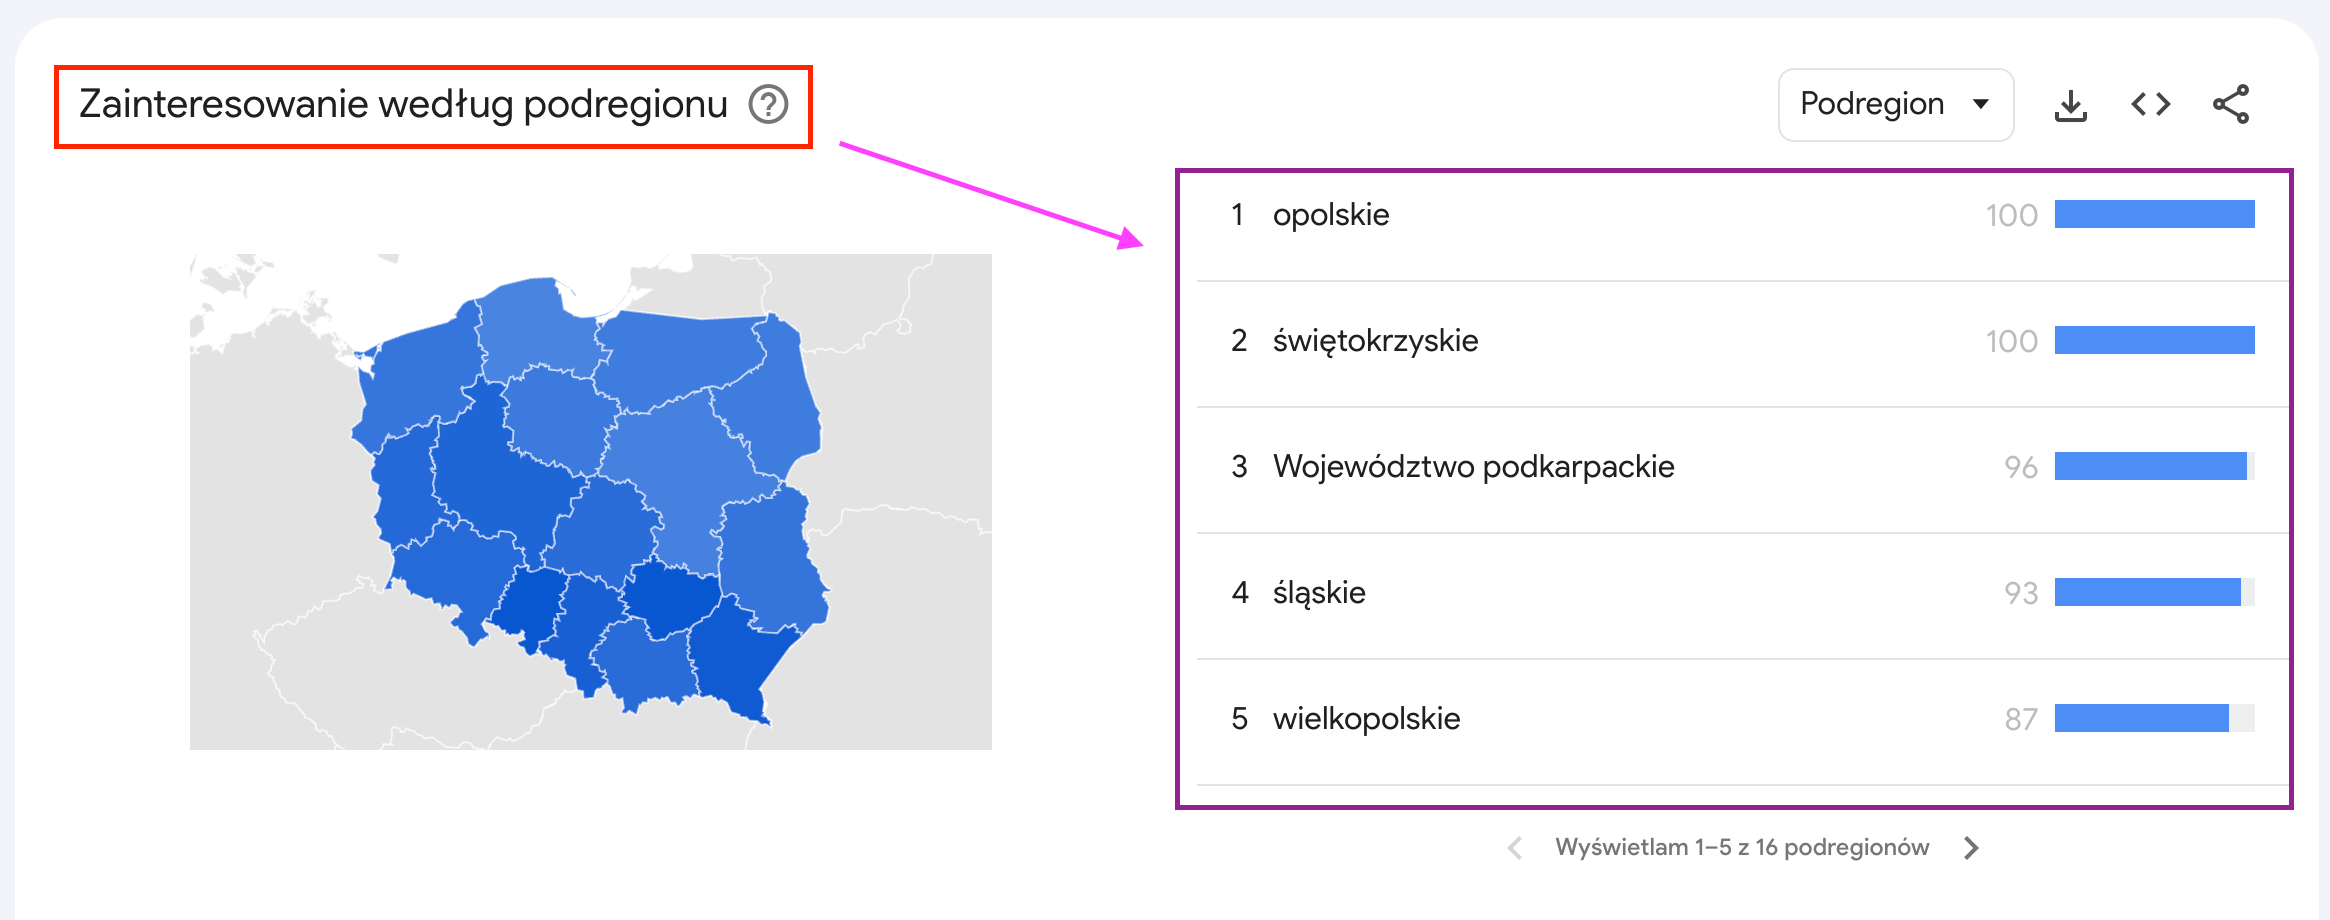 Zainteresowanie według podregionu, Polska, Google Trends